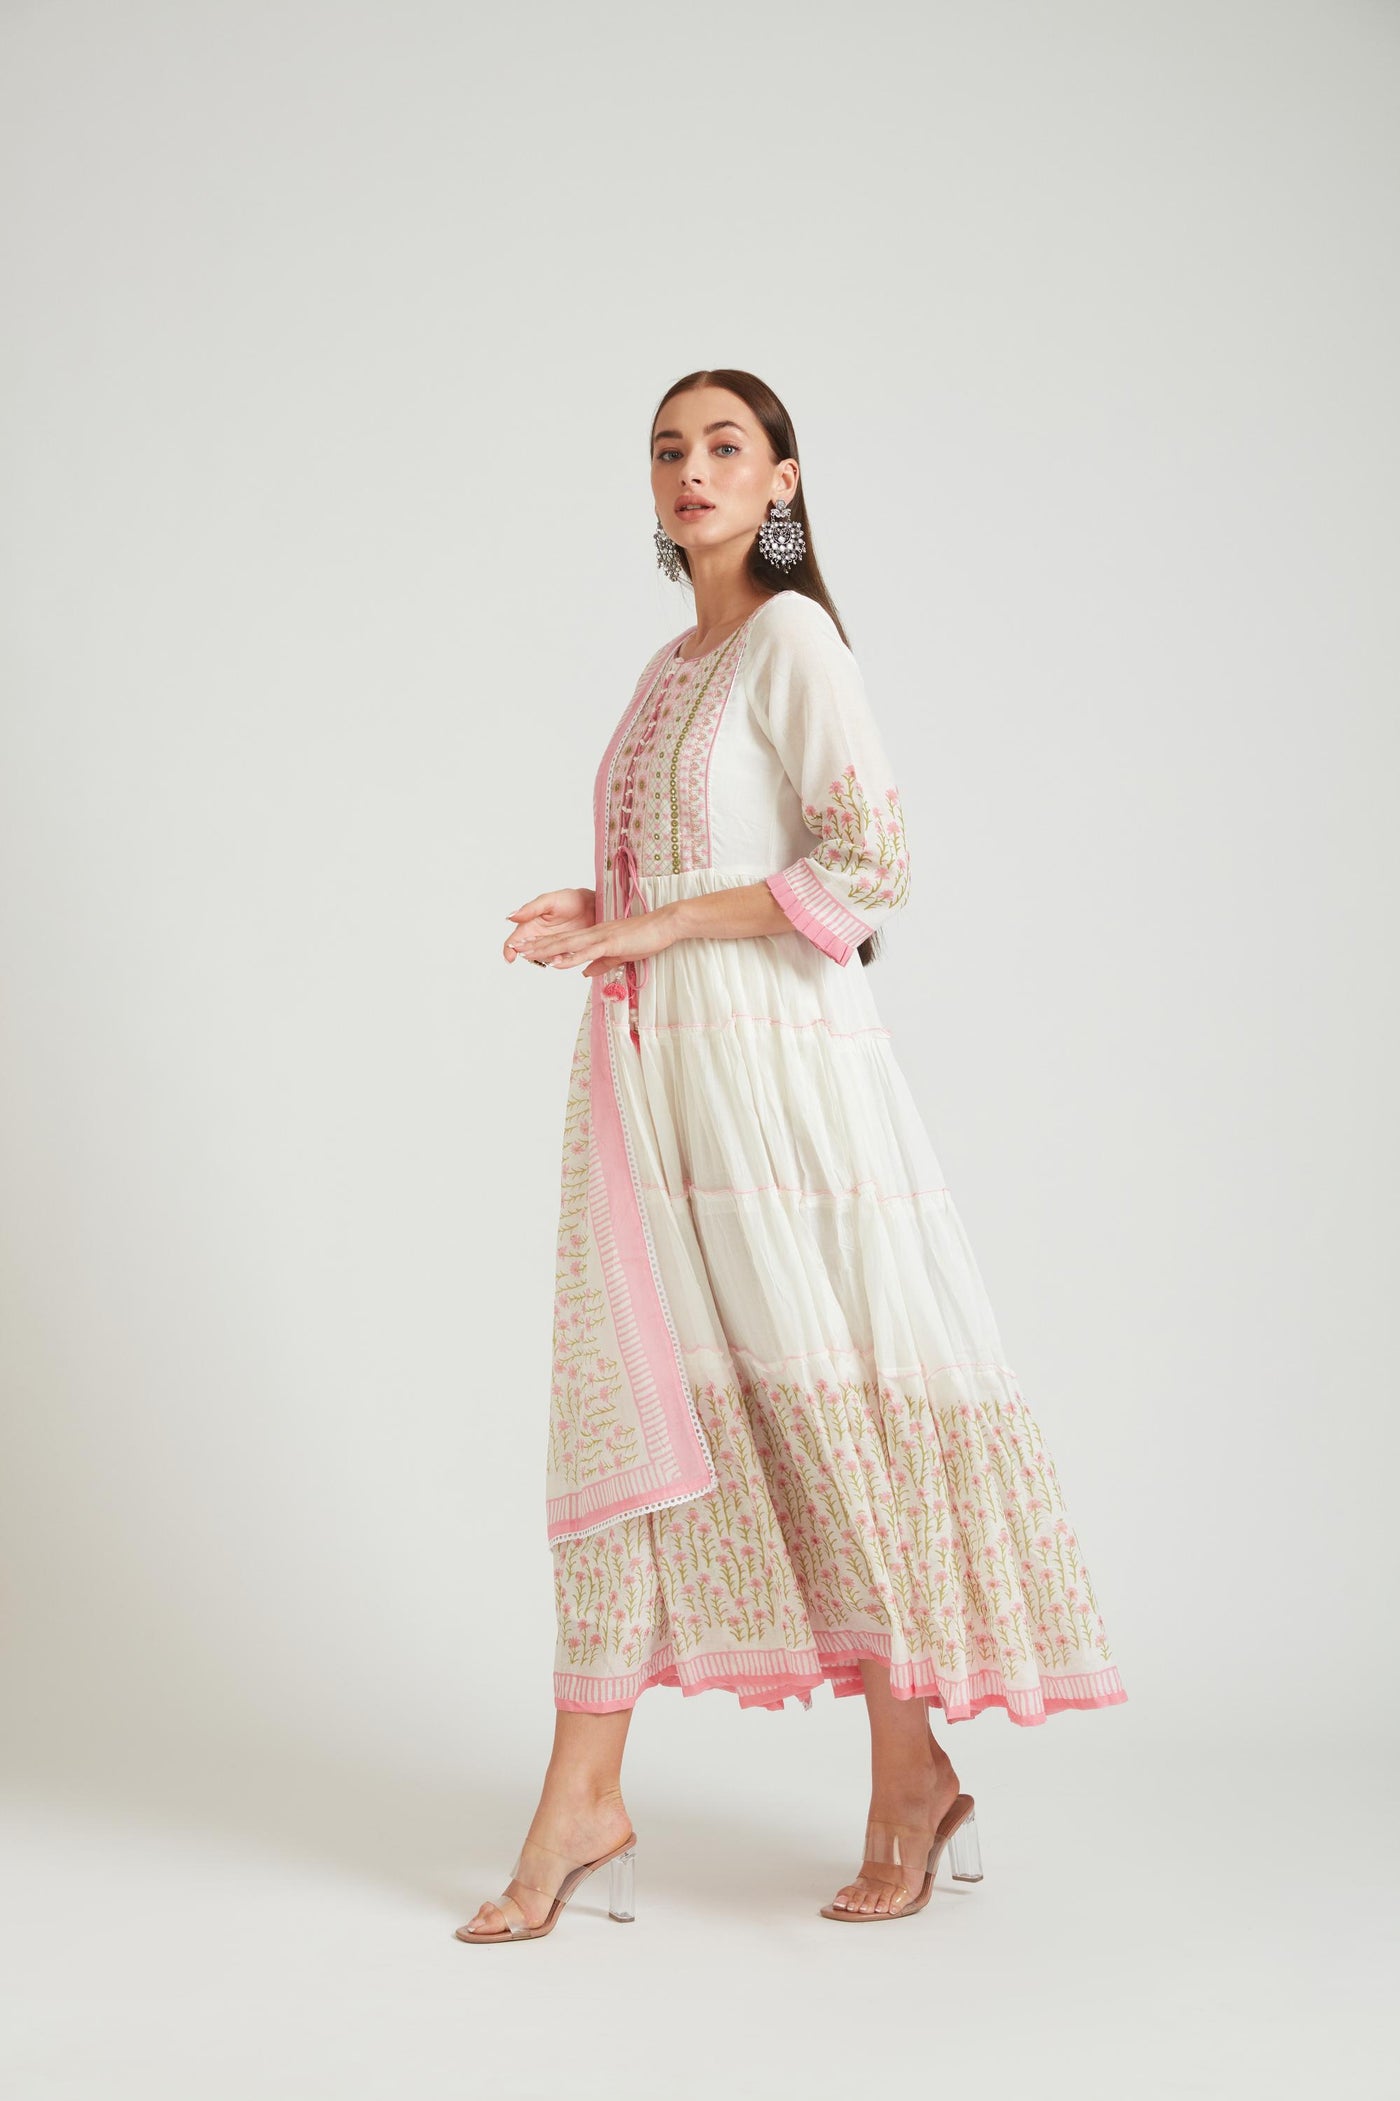 Neeru's Pink Color Cotton Fabric Salwar Kameez